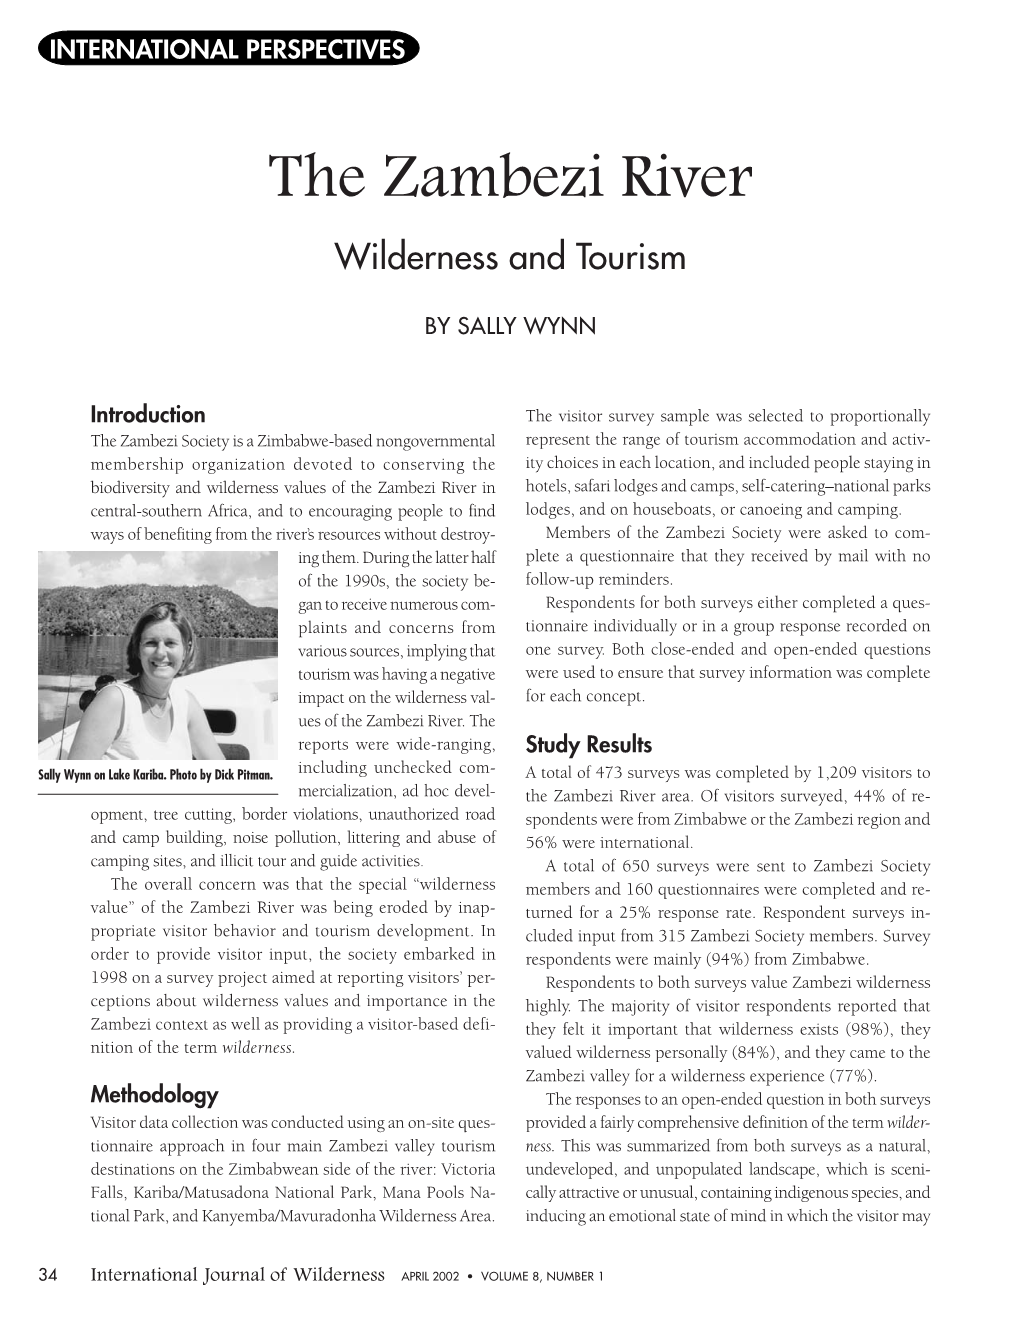 The Zambezi River: Wilderness and Tourism